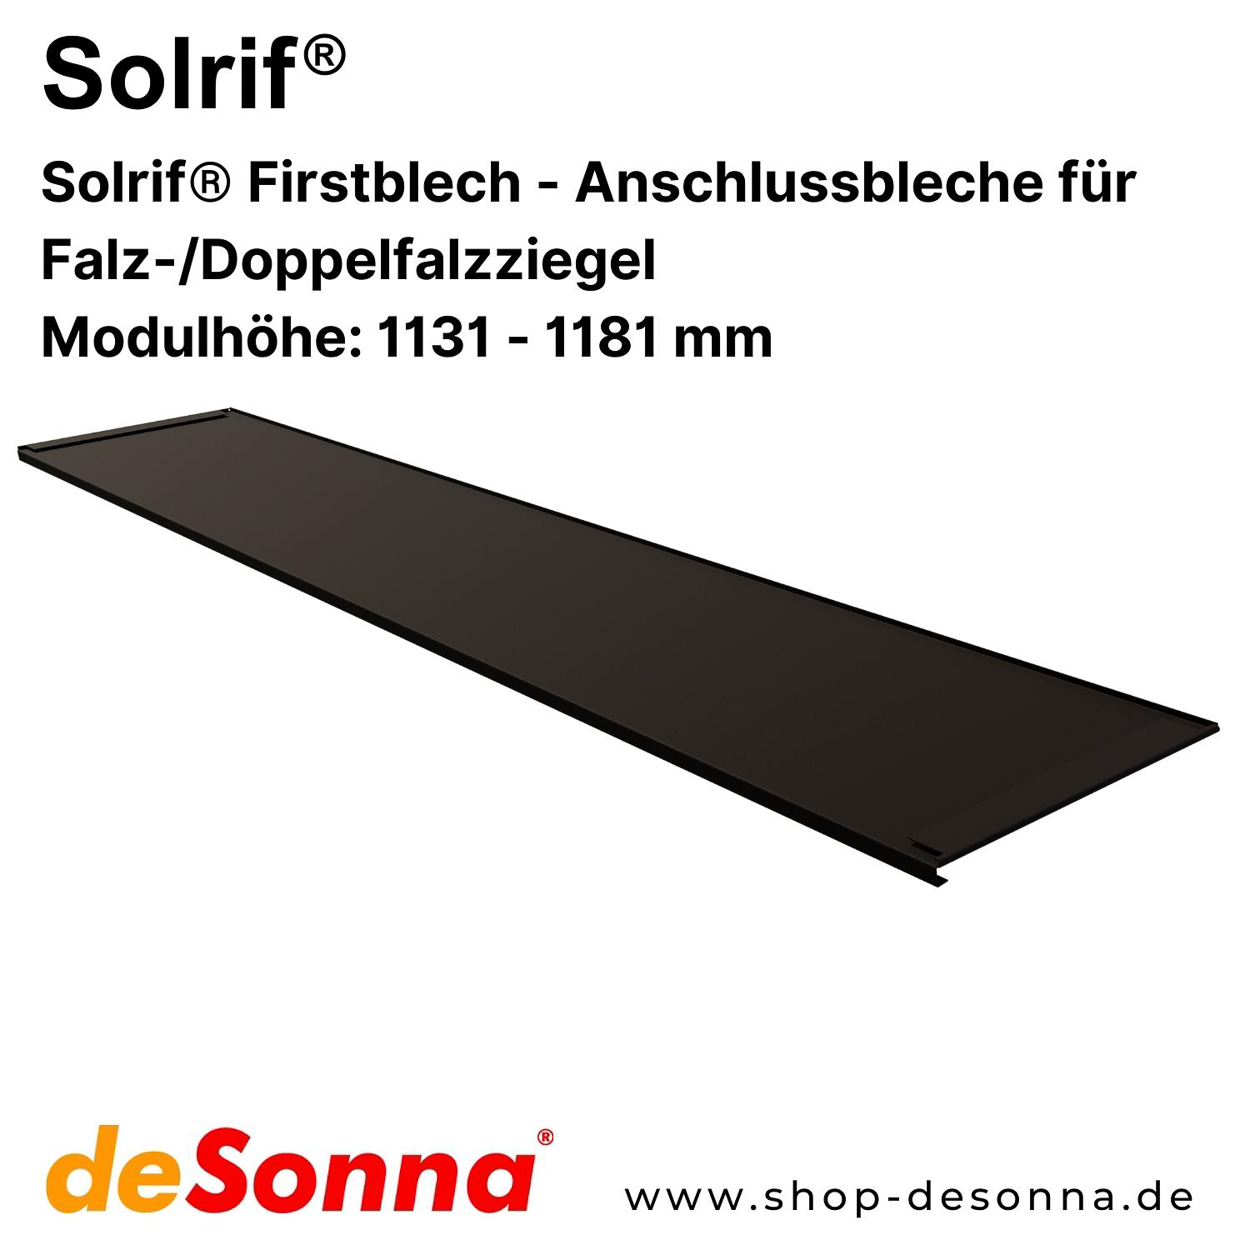 Solrif® Firstblech - Anschlussbleche für Falz-/Doppelfalzziegel